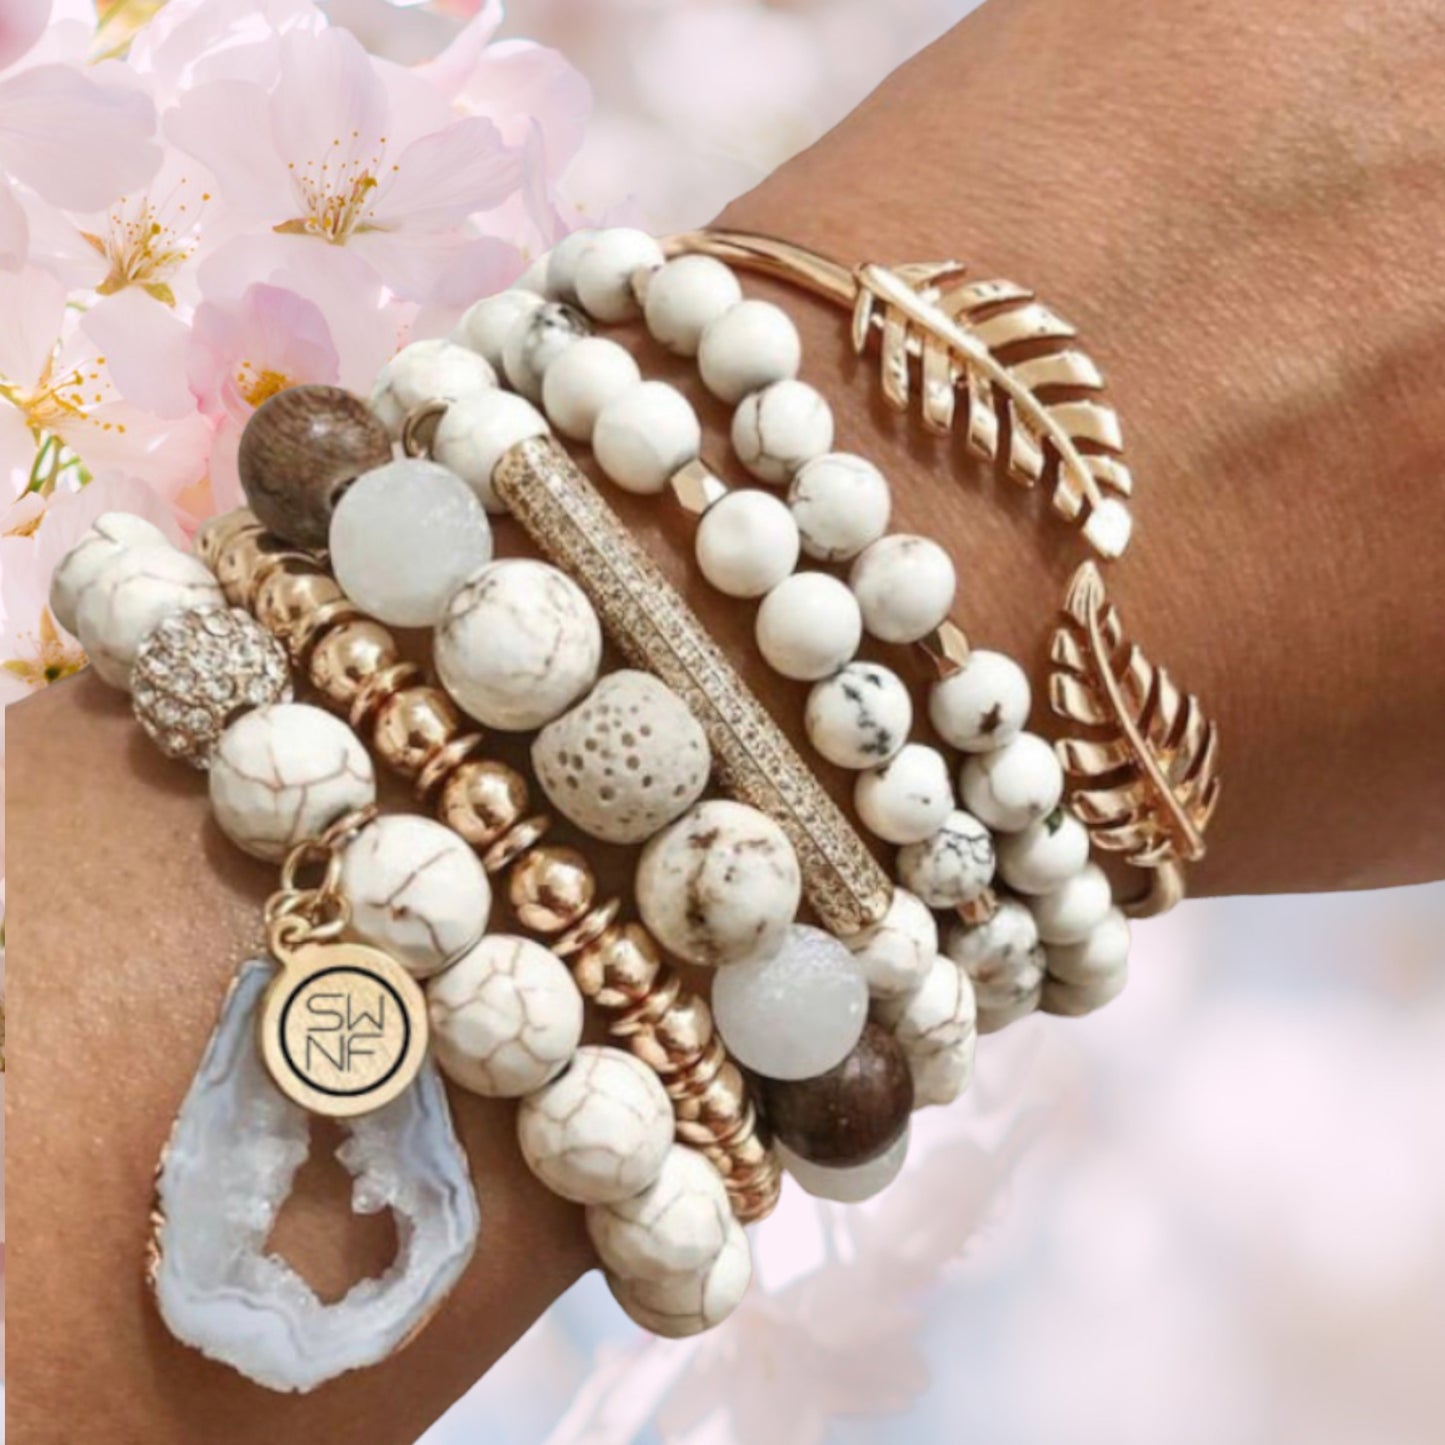 ABUNDANCE STACK-BOHO luxury natural stone bracelet stack